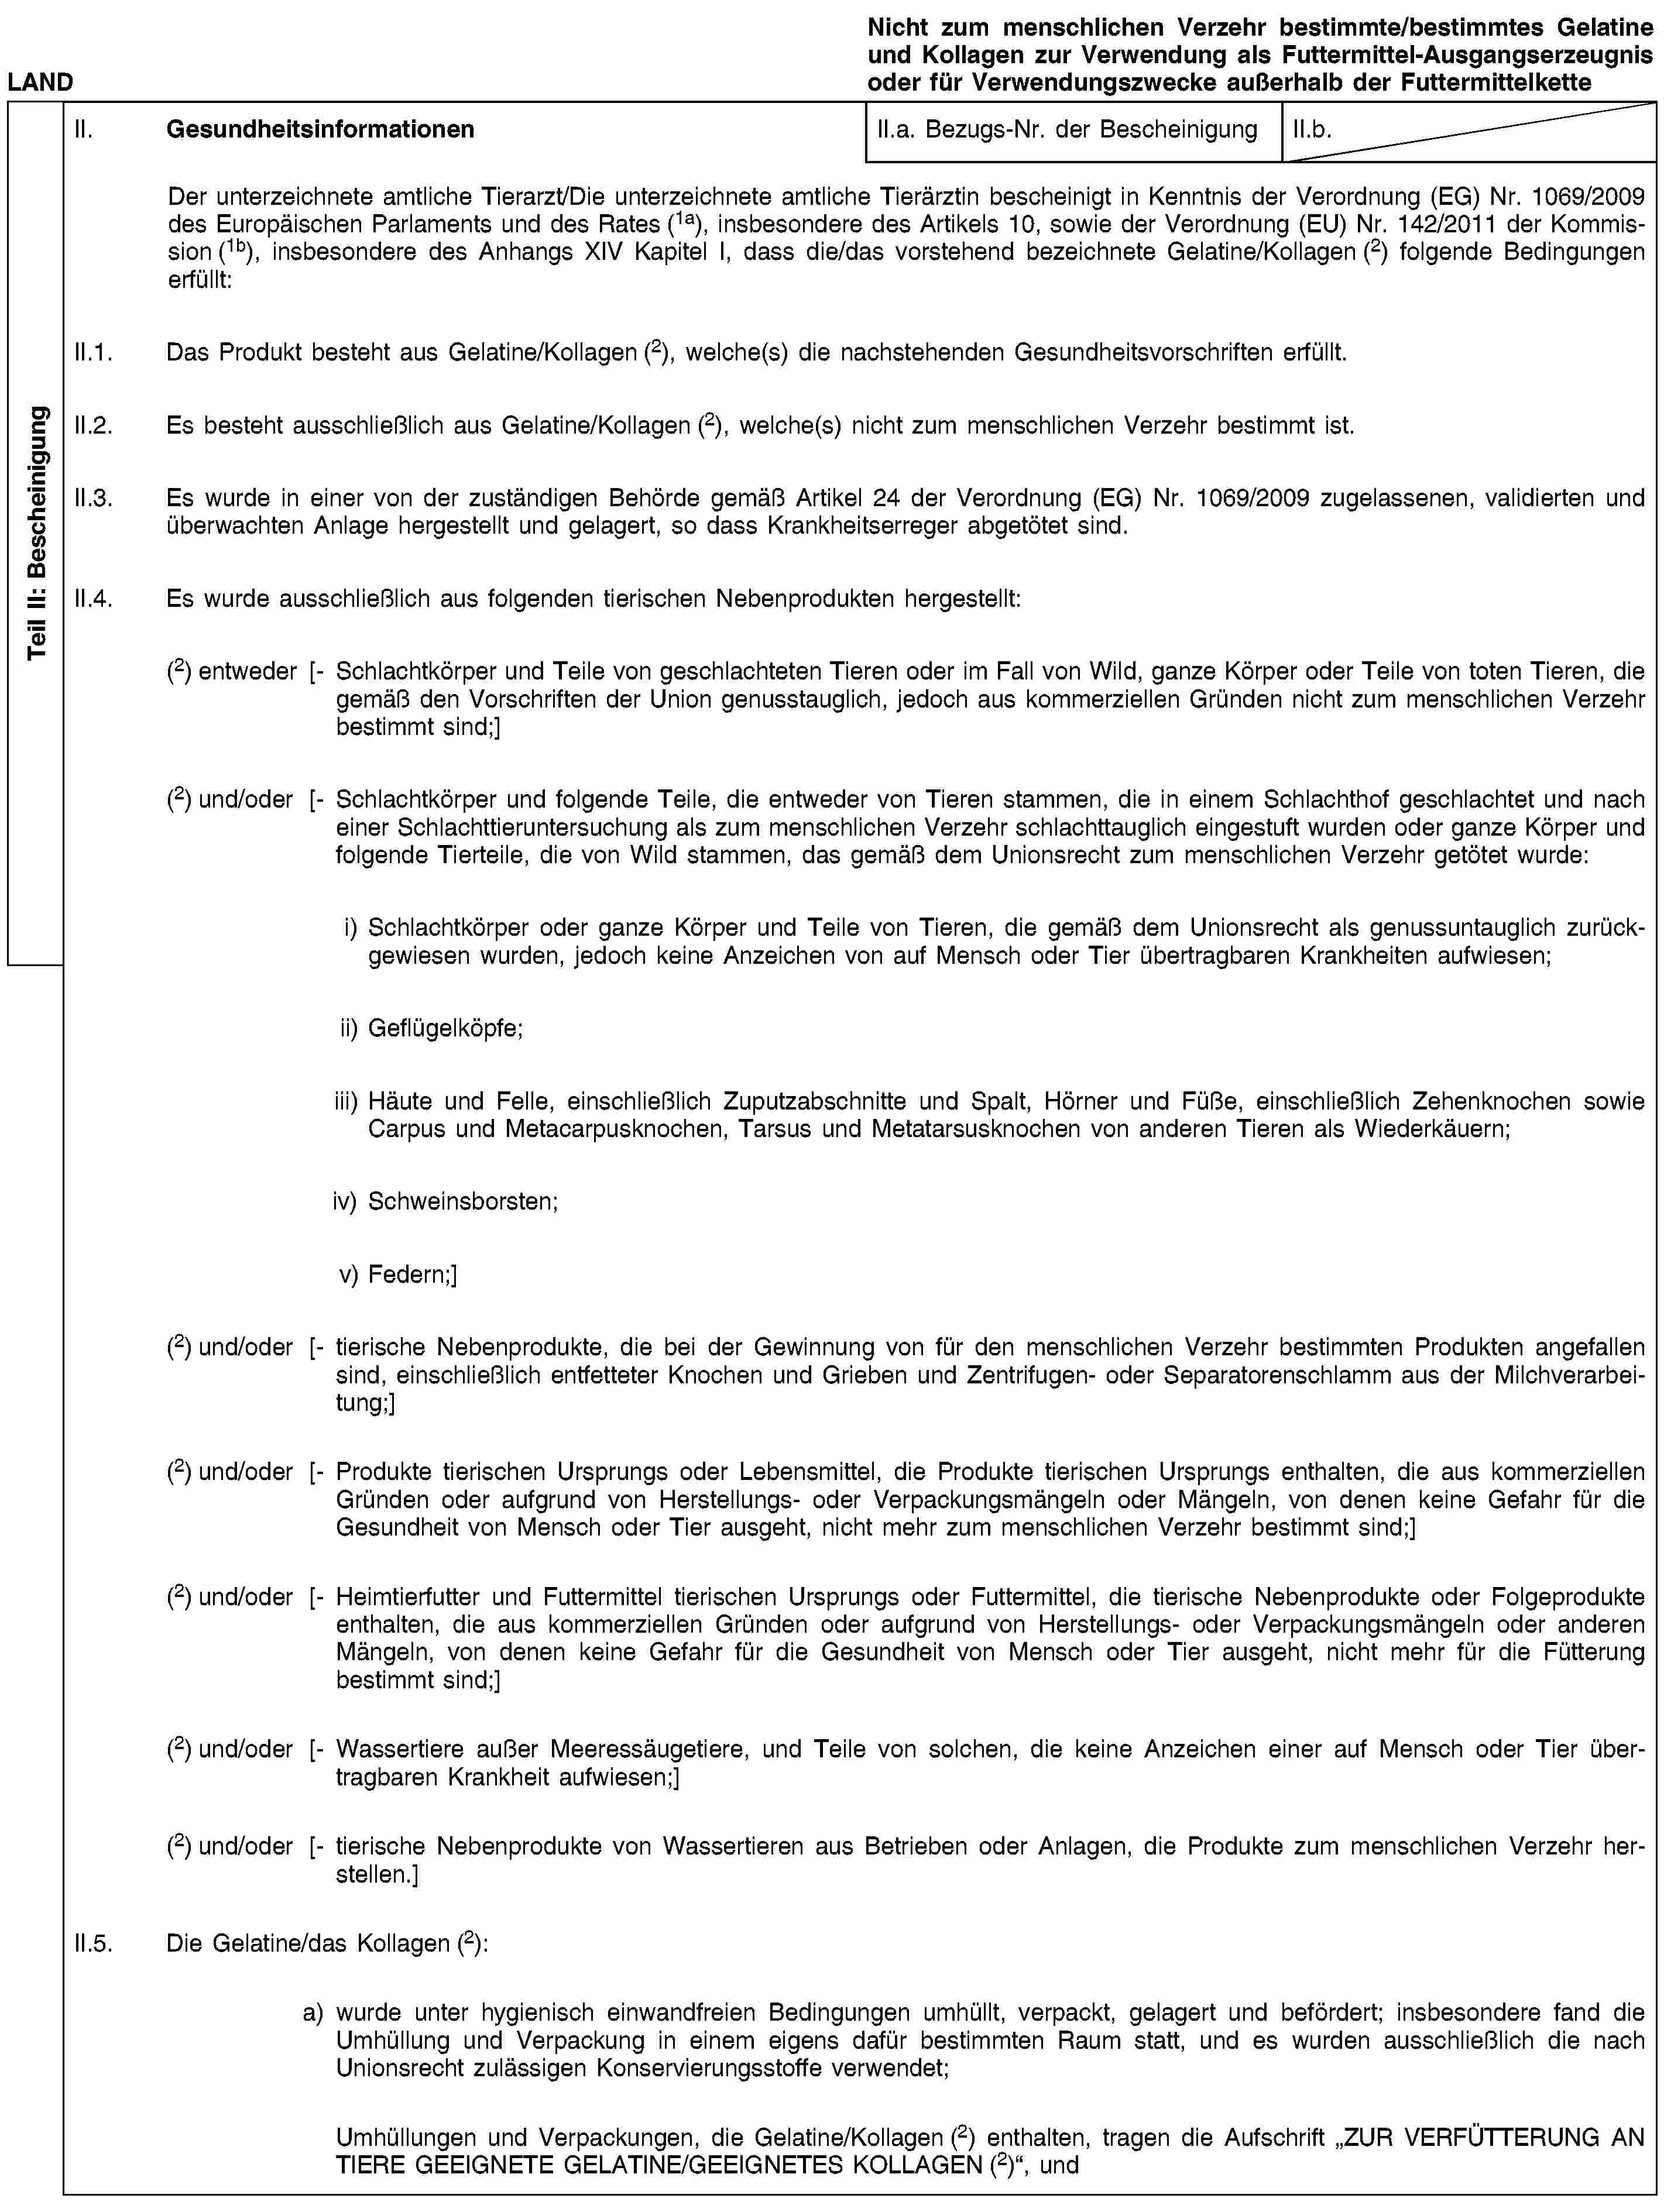 Teil II: BescheinigungLANDNicht zum menschlichen Verzehr bestimmte/bestimmtes Gelatine und Kollagen zur Verwendung als Futtermittel-Ausgangserzeugnis oder für Verwendungszwecke außerhalb der FuttermittelketteII. GesundheitsinformationenII.a. Bezugs-Nr. der BescheinigungII.b.Der unterzeichnete amtliche Tierarzt/Die unterzeichnete amtliche Tierärztin bescheinigt in Kenntnis der Verordnung (EG) Nr. 1069/2009 des Europäischen Parlaments und des Rates (1a), insbesondere des Artikels 10, sowie der Verordnung (EU) Nr. 142/2011 der Kommission (1b), insbesondere des Anhangs XIV Kapitel I, dass die/das vorstehend bezeichnete Gelatine/Kollagen (2) folgende Bedingungen erfüllt:II.1. Das Produkt besteht aus Gelatine/Kollagen (2), welche(s) die nachstehenden Gesundheitsvorschriften erfüllt.II.2. Es besteht ausschließlich aus Gelatine/Kollagen (2), welche(s) nicht zum menschlichen Verzehr bestimmt ist.II.3. Es wurde in einer von der zuständigen Behörde gemäß Artikel 24 der Verordnung (EG) Nr. 1069/2009 zugelassenen, validierten und überwachten Anlage hergestellt und gelagert, so dass Krankheitserreger abgetötet sind.II.4. Es wurde ausschließlich aus folgenden tierischen Nebenprodukten hergestellt:(2) entweder [- Schlachtkörper und Teile von geschlachteten Tieren oder im Fall von Wild, ganze Körper oder Teile von toten Tieren, die gemäß den Vorschriften der Union genusstauglich, jedoch aus kommerziellen Gründen nicht zum menschlichen Verzehr bestimmt sind;](2) und/oder [- Schlachtkörper und folgende Teile, die entweder von Tieren stammen, die in einem Schlachthof geschlachtet und nach einer Schlachttieruntersuchung als zum menschlichen Verzehr schlachttauglich eingestuft wurden oder ganze Körper und folgende Tierteile, die von Wild stammen, das gemäß dem Unionsrecht zum menschlichen Verzehr getötet wurde:i) Schlachtkörper oder ganze Körper und Teile von Tieren, die gemäß dem Unionsrecht als genussuntauglich zurückgewiesen wurden, jedoch keine Anzeichen von auf Mensch oder Tier übertragbaren Krankheiten aufwiesen;ii) Geflügelköpfe;iii) Häute und Felle, einschließlich Zuputzabschnitte und Spalt, Hörner und Füße, einschließlich Zehenknochen sowie Carpus und Metacarpusknochen, Tarsus und Metatarsusknochen von anderen Tieren als Wiederkäuern;iv) Schweinsborsten;v) Federn;](2) und/oder [- tierische Nebenprodukte, die bei der Gewinnung von für den menschlichen Verzehr bestimmten Produkten angefallen sind, einschließlich entfetteter Knochen und Grieben und Zentrifugen- oder Separatorenschlamm aus der Milchverarbeitung;](2) und/oder [- Produkte tierischen Ursprungs oder Lebensmittel, die Produkte tierischen Ursprungs enthalten, die aus kommerziellen Gründen oder aufgrund von Herstellungs- oder Verpackungsmängeln oder Mängeln, von denen keine Gefahr für die Gesundheit von Mensch oder Tier ausgeht, nicht mehr zum menschlichen Verzehr bestimmt sind;](2) und/oder [- Heimtierfutter und Futtermittel tierischen Ursprungs oder Futtermittel, die tierische Nebenprodukte oder Folgeprodukte enthalten, die aus kommerziellen Gründen oder aufgrund von Herstellungs- oder Verpackungsmängeln oder anderen Mängeln, von denen keine Gefahr für die Gesundheit von Mensch oder Tier ausgeht, nicht mehr für die Fütterung bestimmt sind;](2) und/oder [- Wassertiere außer Meeressäugetiere, und Teile von solchen, die keine Anzeichen einer auf Mensch oder Tier übertragbaren Krankheit aufwiesen;](2) und/oder [- tierische Nebenprodukte von Wassertieren aus Betrieben oder Anlagen, die Produkte zum menschlichen Verzehr herstellen.]II.5. Die Gelatine/das Kollagen (2):a) wurde unter hygienisch einwandfreien Bedingungen umhüllt, verpackt, gelagert und befördert; insbesondere fand die Umhüllung und Verpackung in einem eigens dafür bestimmten Raum statt, und es wurden ausschließlich die nach Unionsrecht zulässigen Konservierungsstoffe verwendet;Umhüllungen und Verpackungen, die Gelatine/Kollagen (2) enthalten, tragen die Aufschrift „ZUR VERFÜTTERUNG AN TIERE GEEIGNETE GELATINE/GEEIGNETES KOLLAGEN (2)“, und